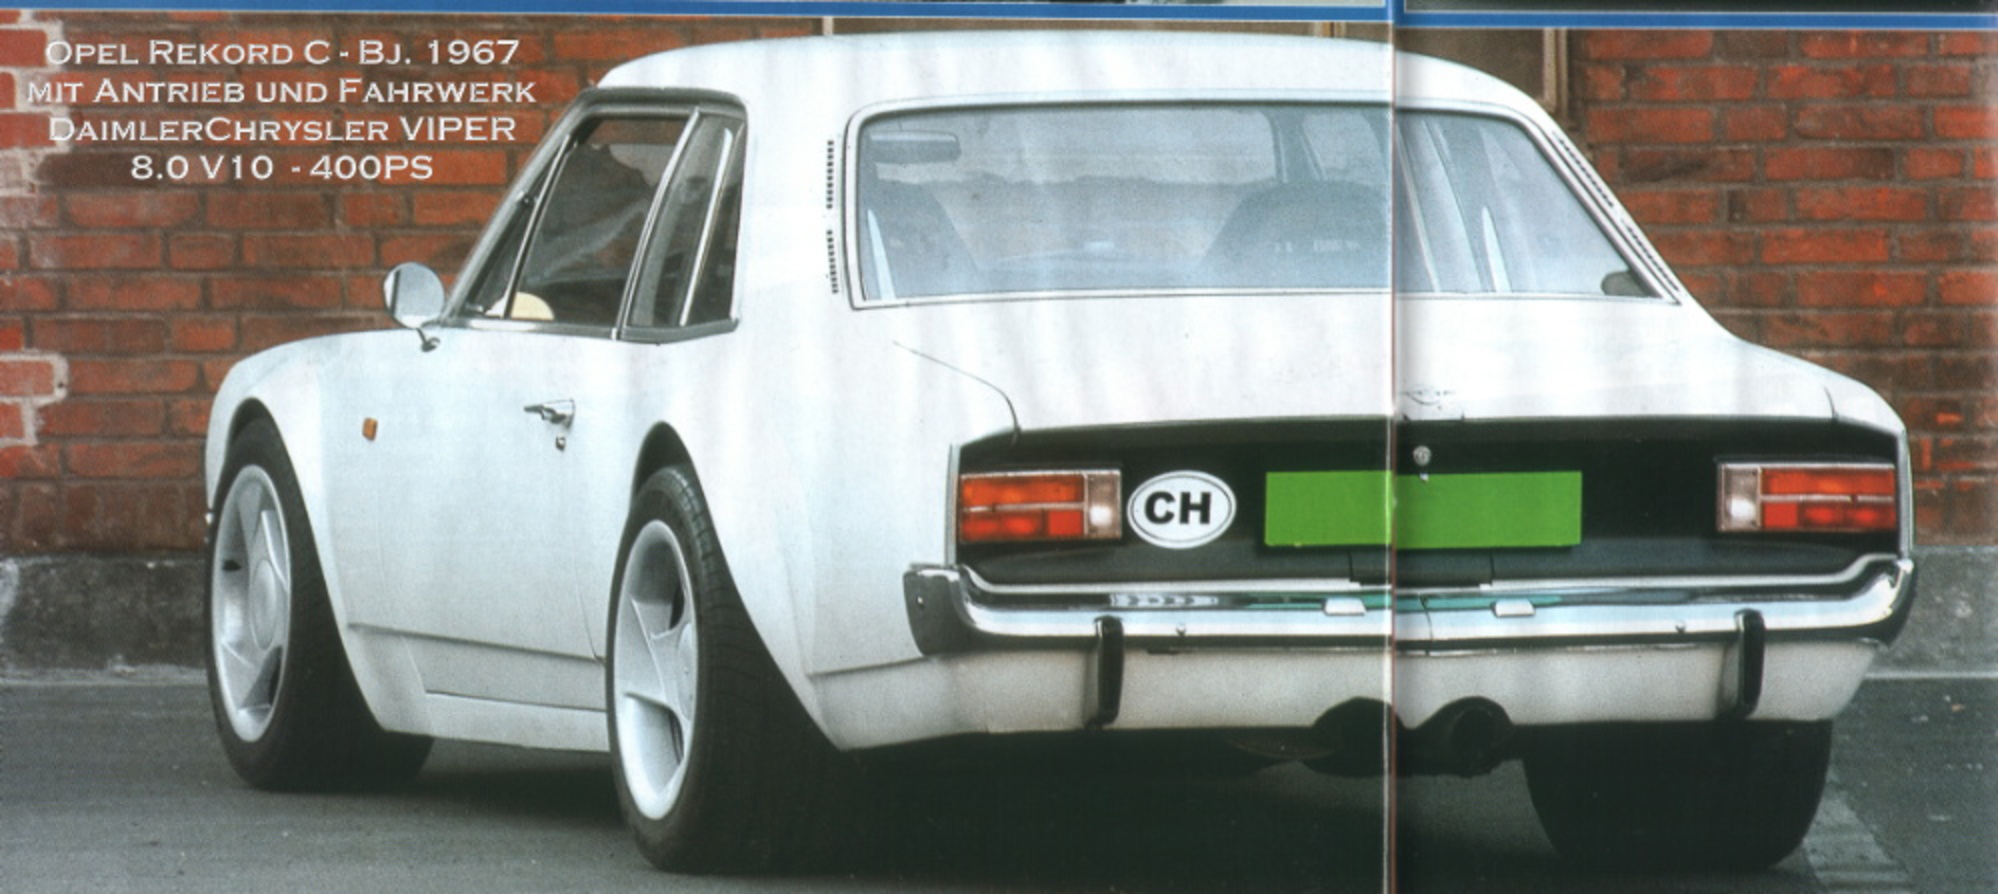 1967er Opel Rekord C mit VIPER-Technik 001.JPG